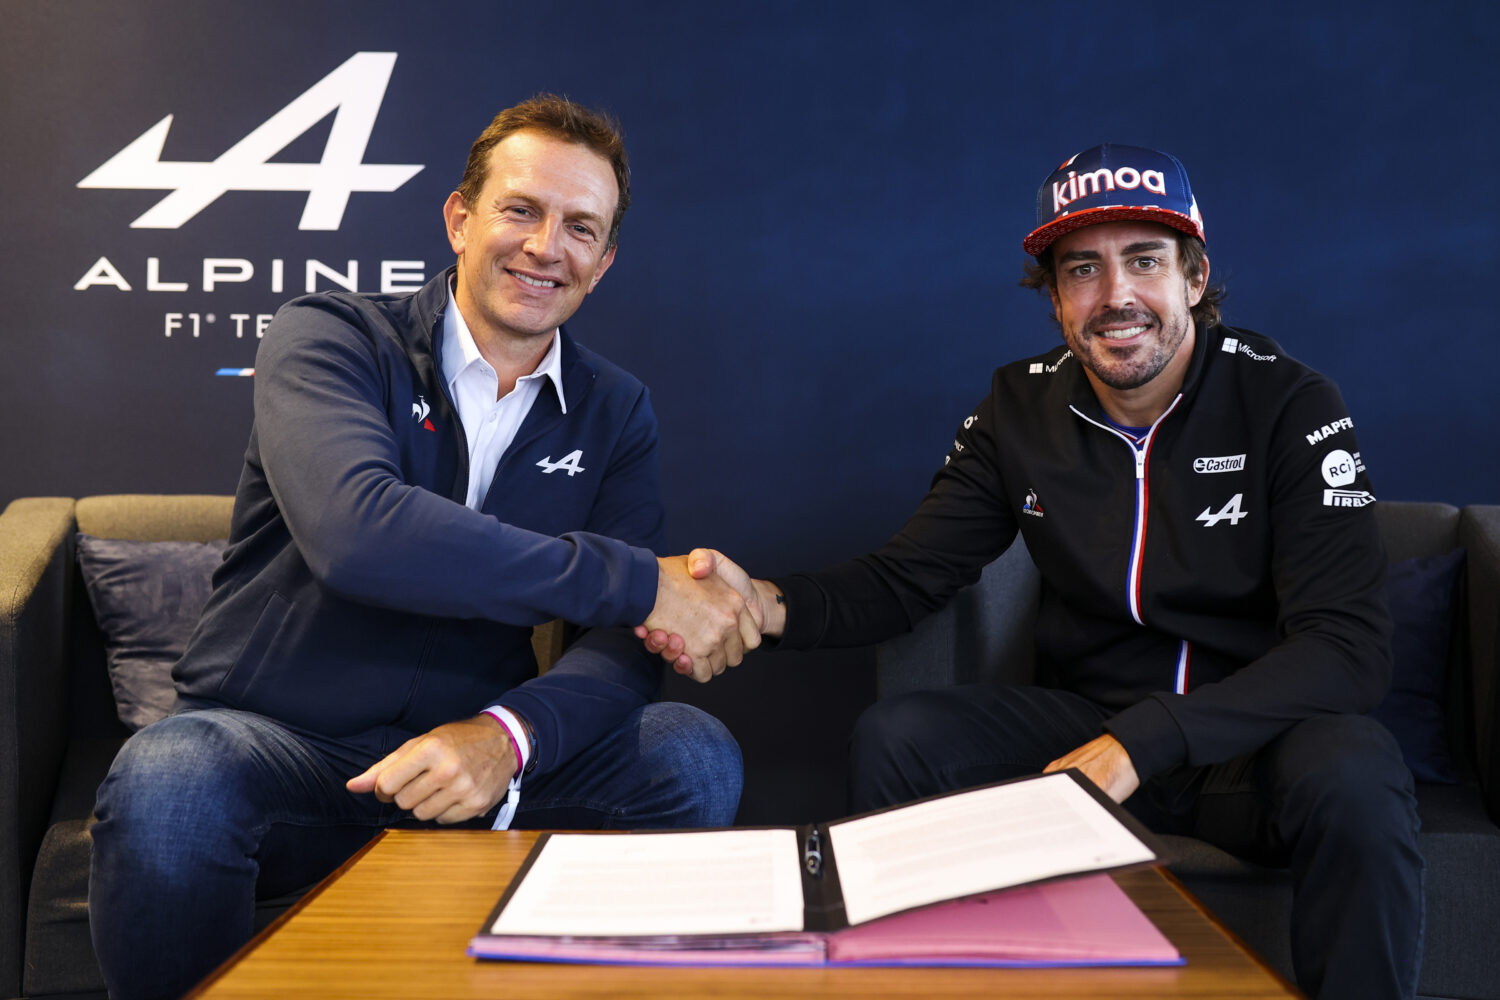 Alpine F1 Team confirms Fernando Alonso for 2022